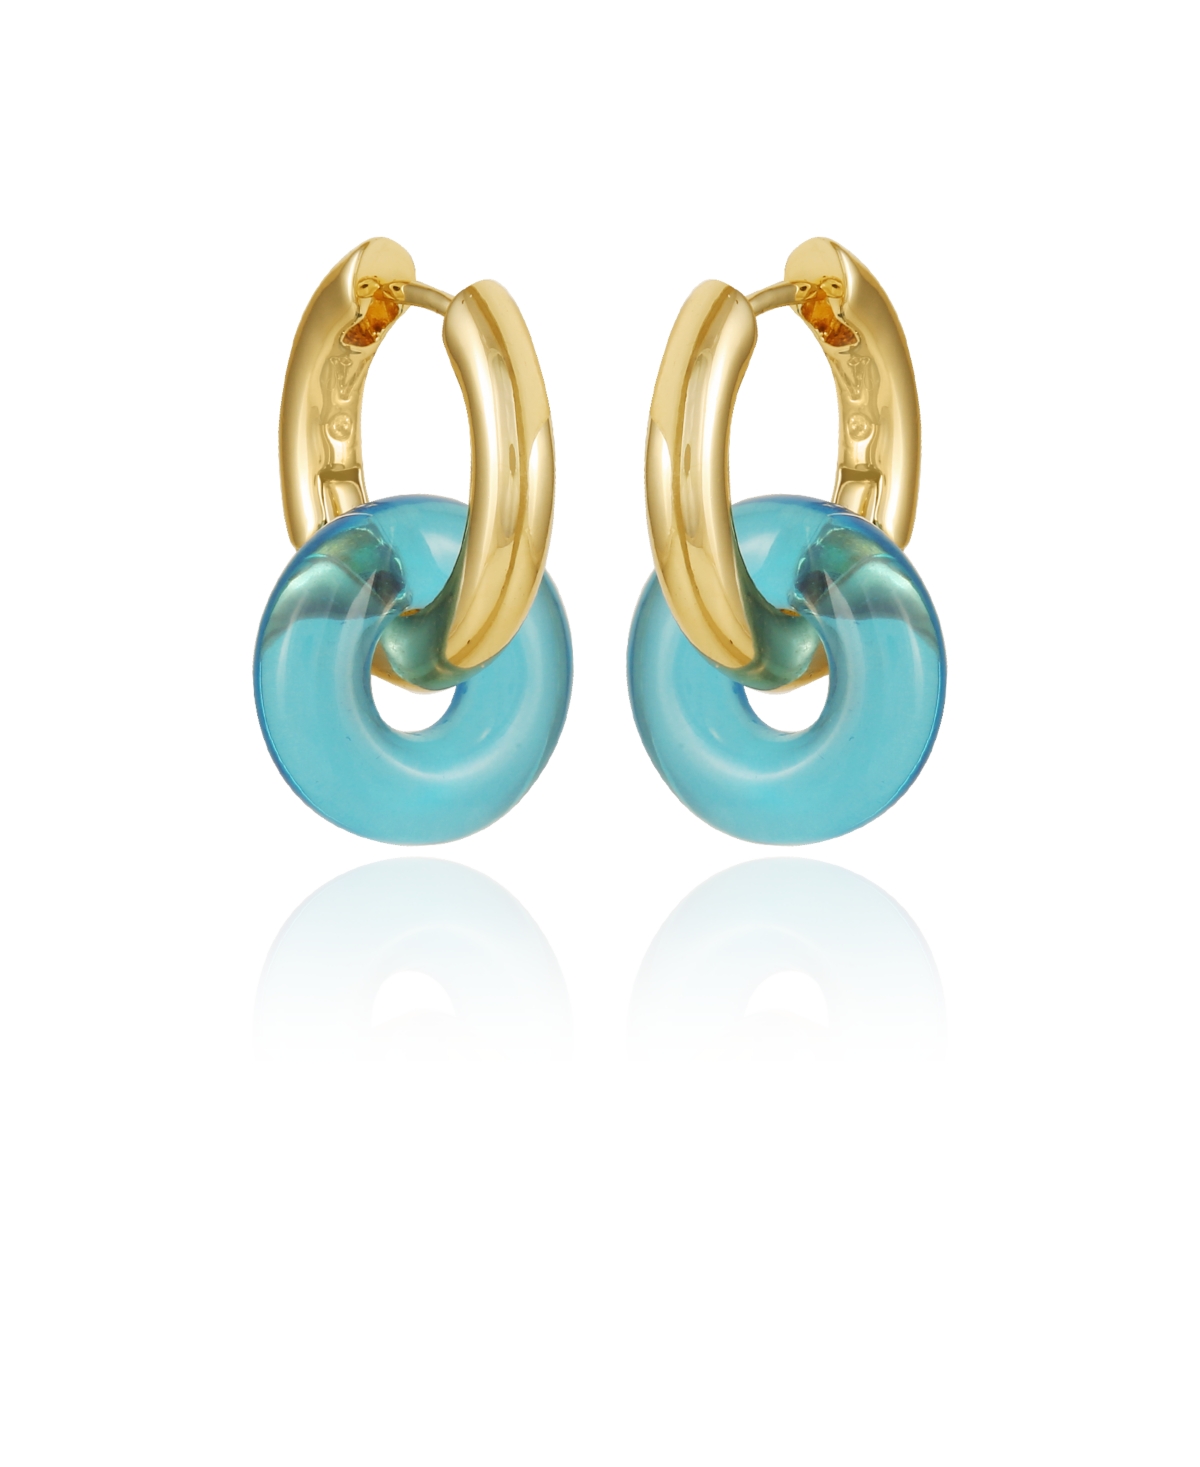 Rock Candy Huggie Earrings - Gold-Tone, Blue